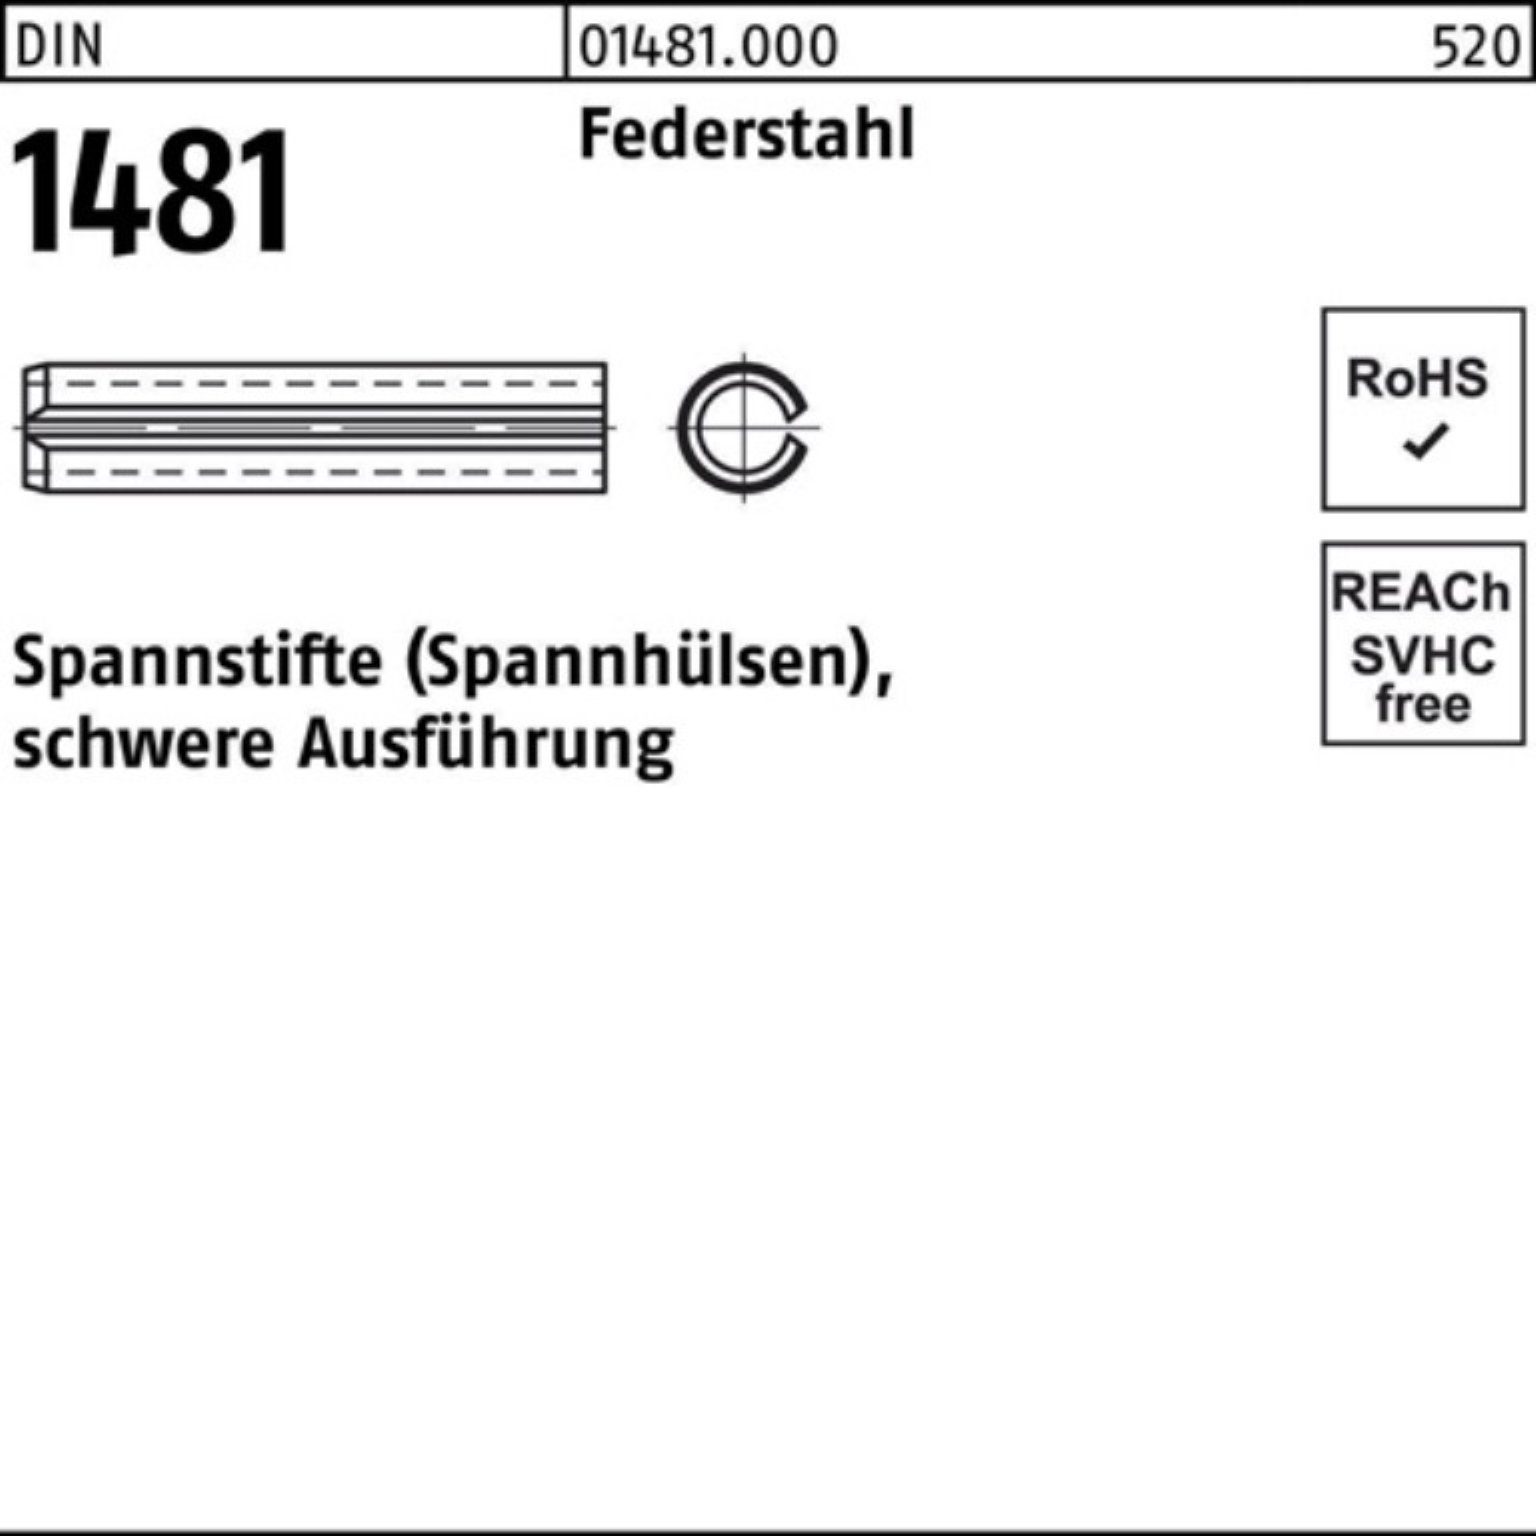 Reyher Spannstift 100er Pack 2 16x DIN 40 schwere Spannstift Ausführung 1481 Federstahl